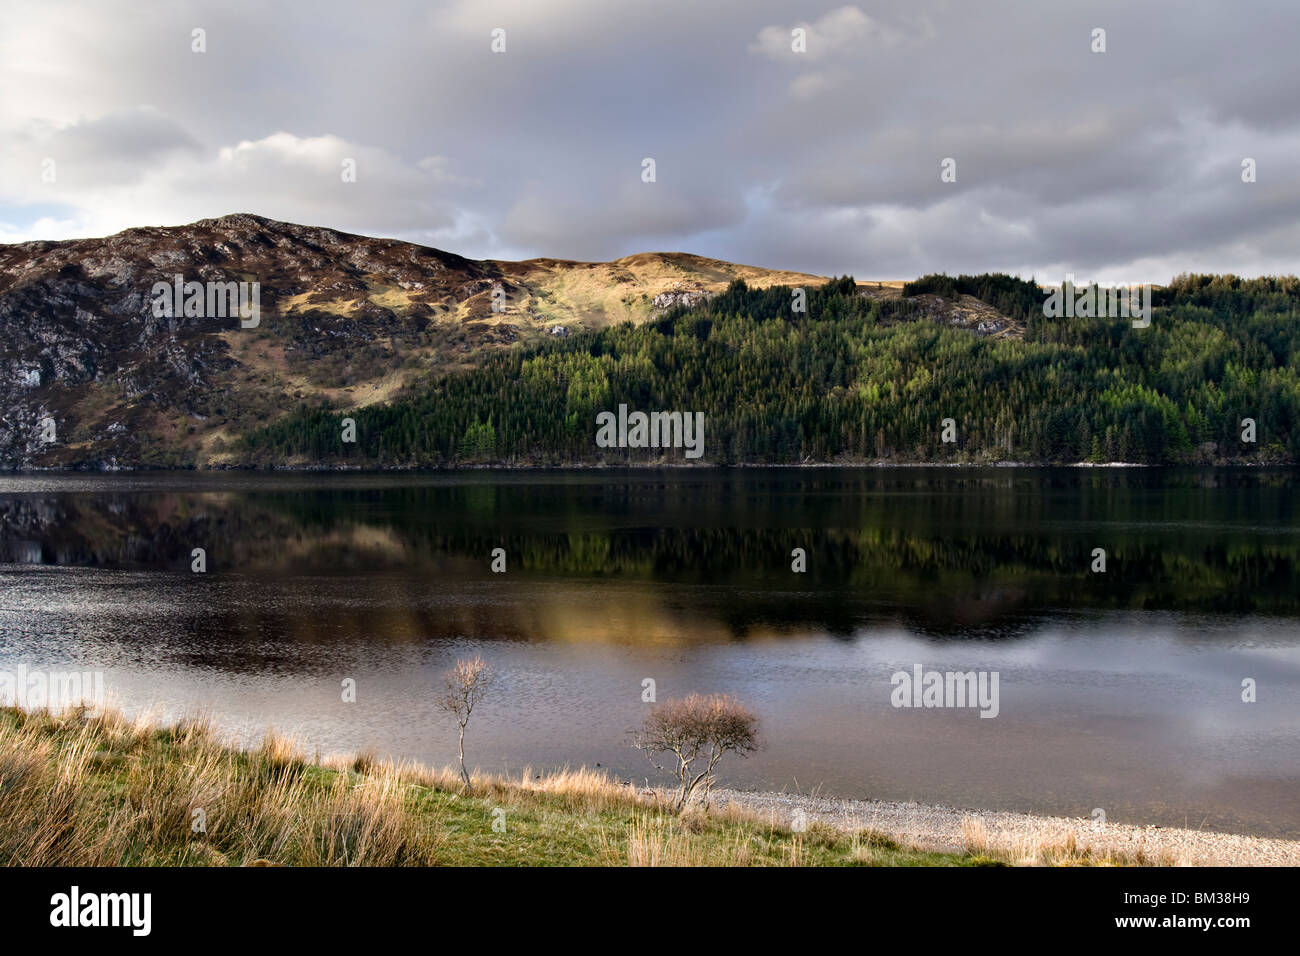 Loch más en el extremo norte de Escocia en el distrito de Sutherland tomada desde la A838 con reflexión Foto de stock